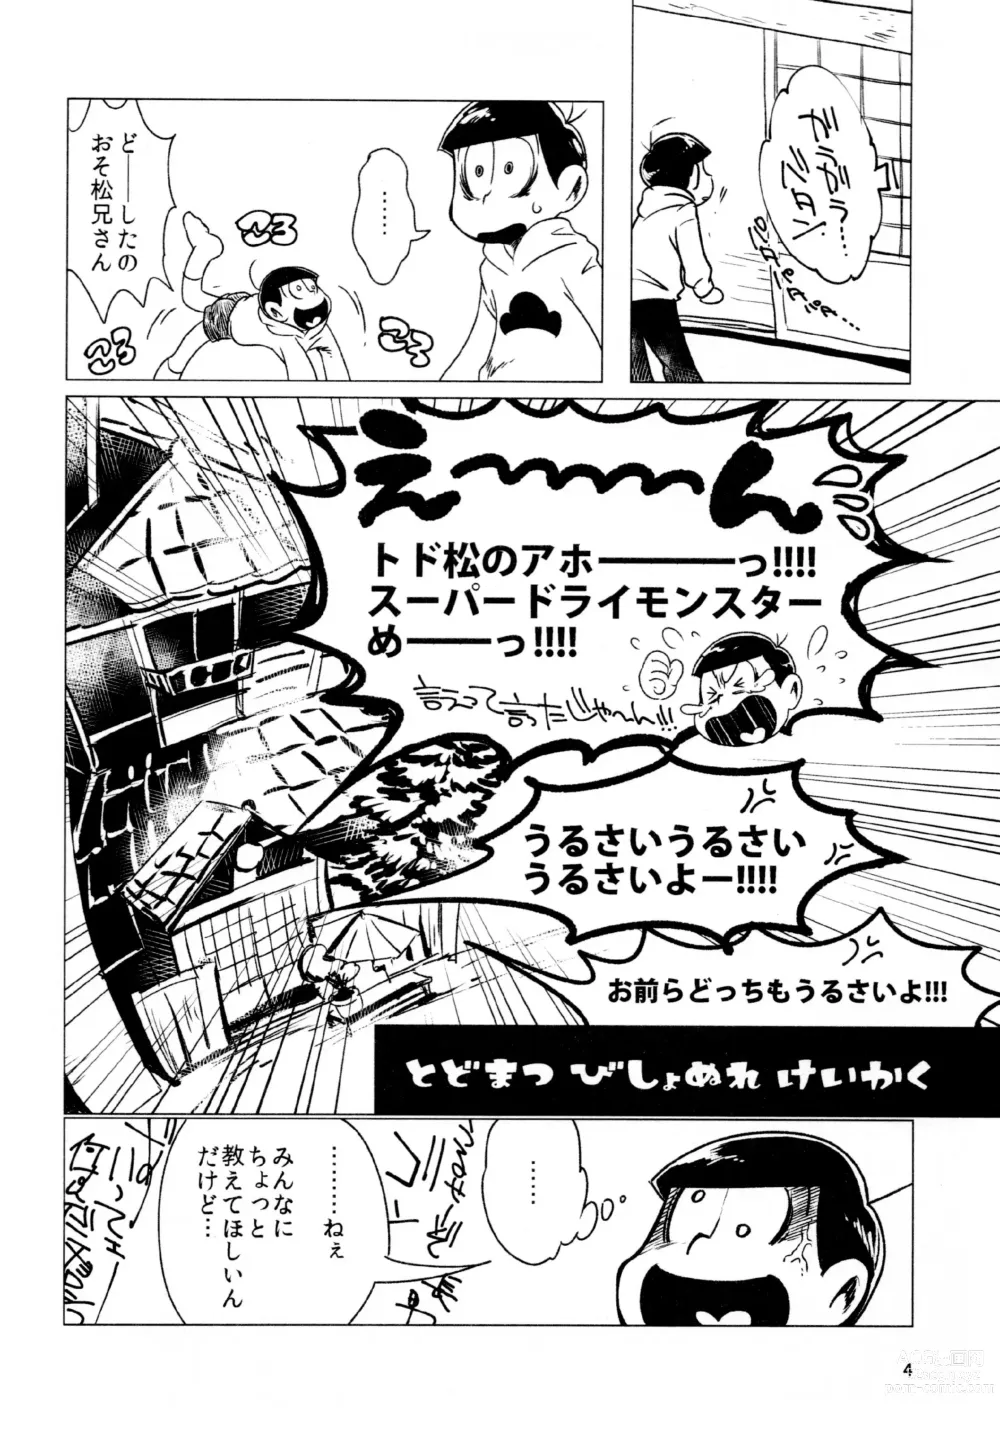 Page 4 of doujinshi Todomatsu Bishonure Keikaku